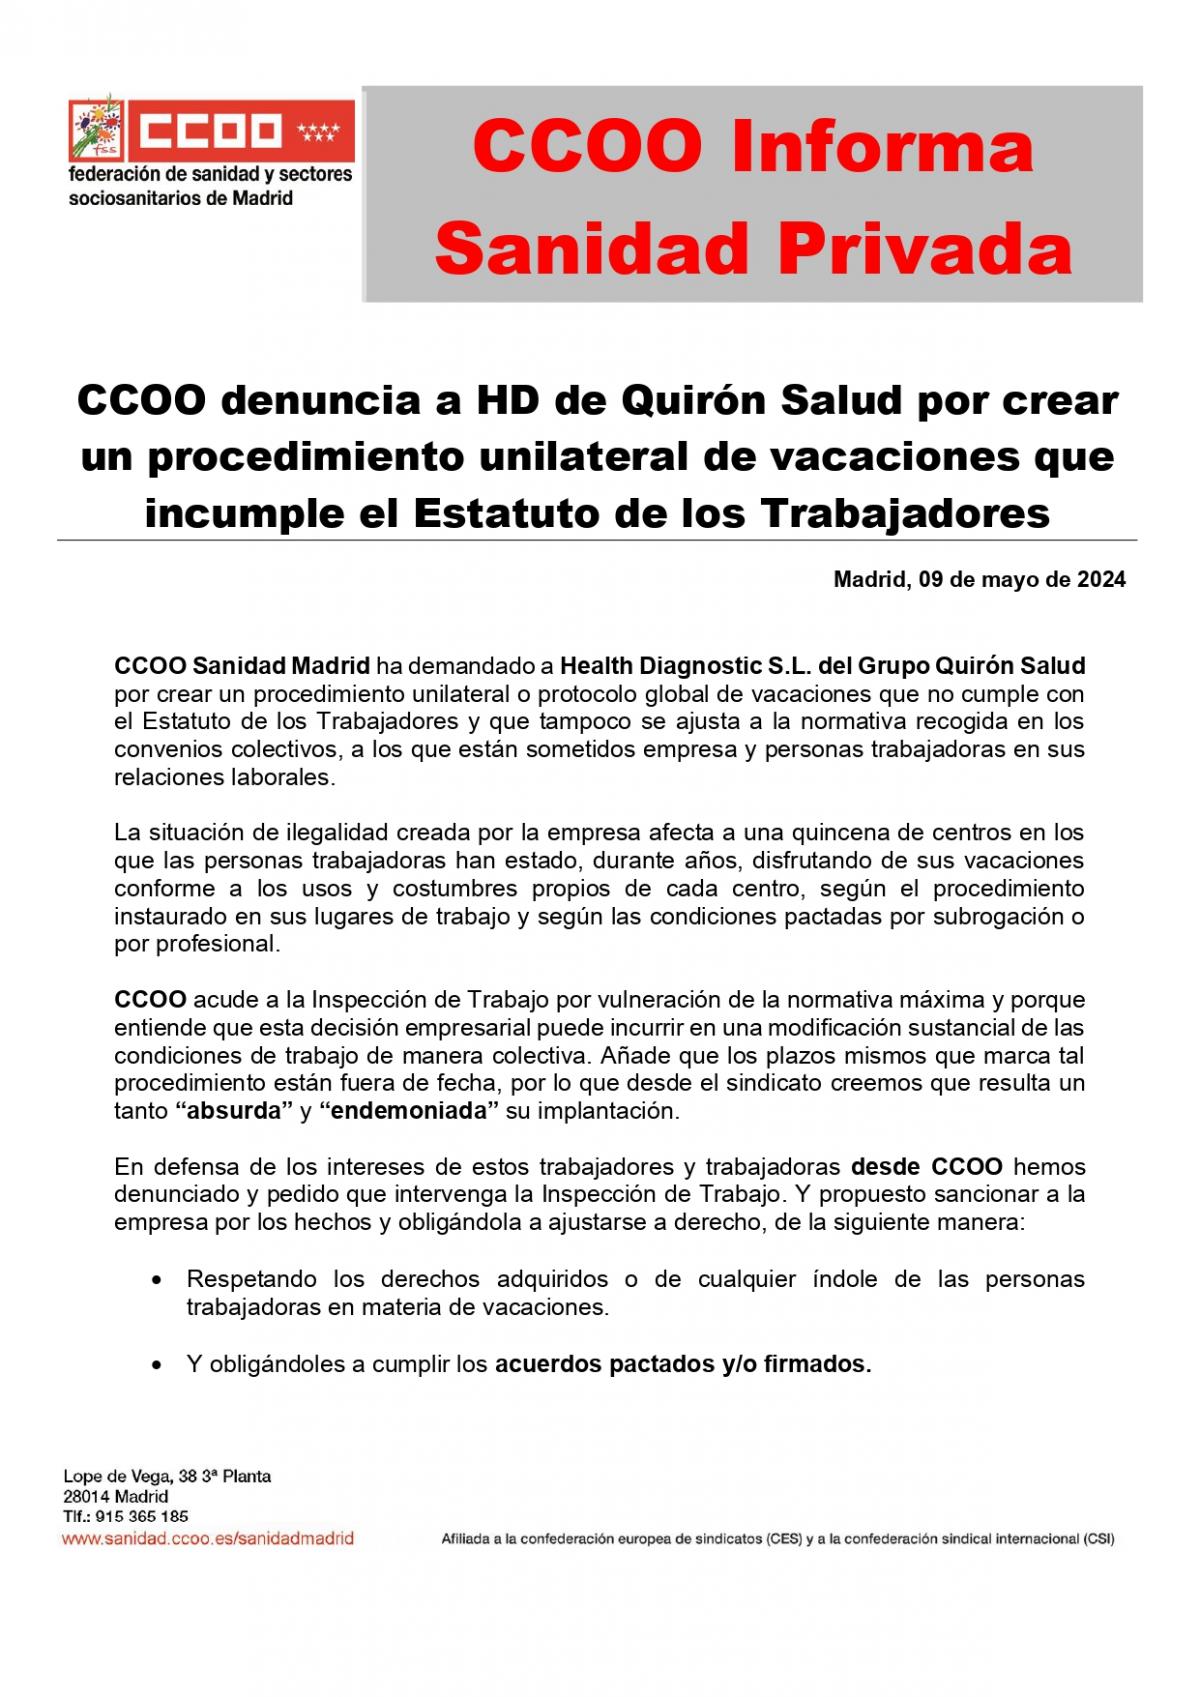 Informa CCOO Sanidad Privada